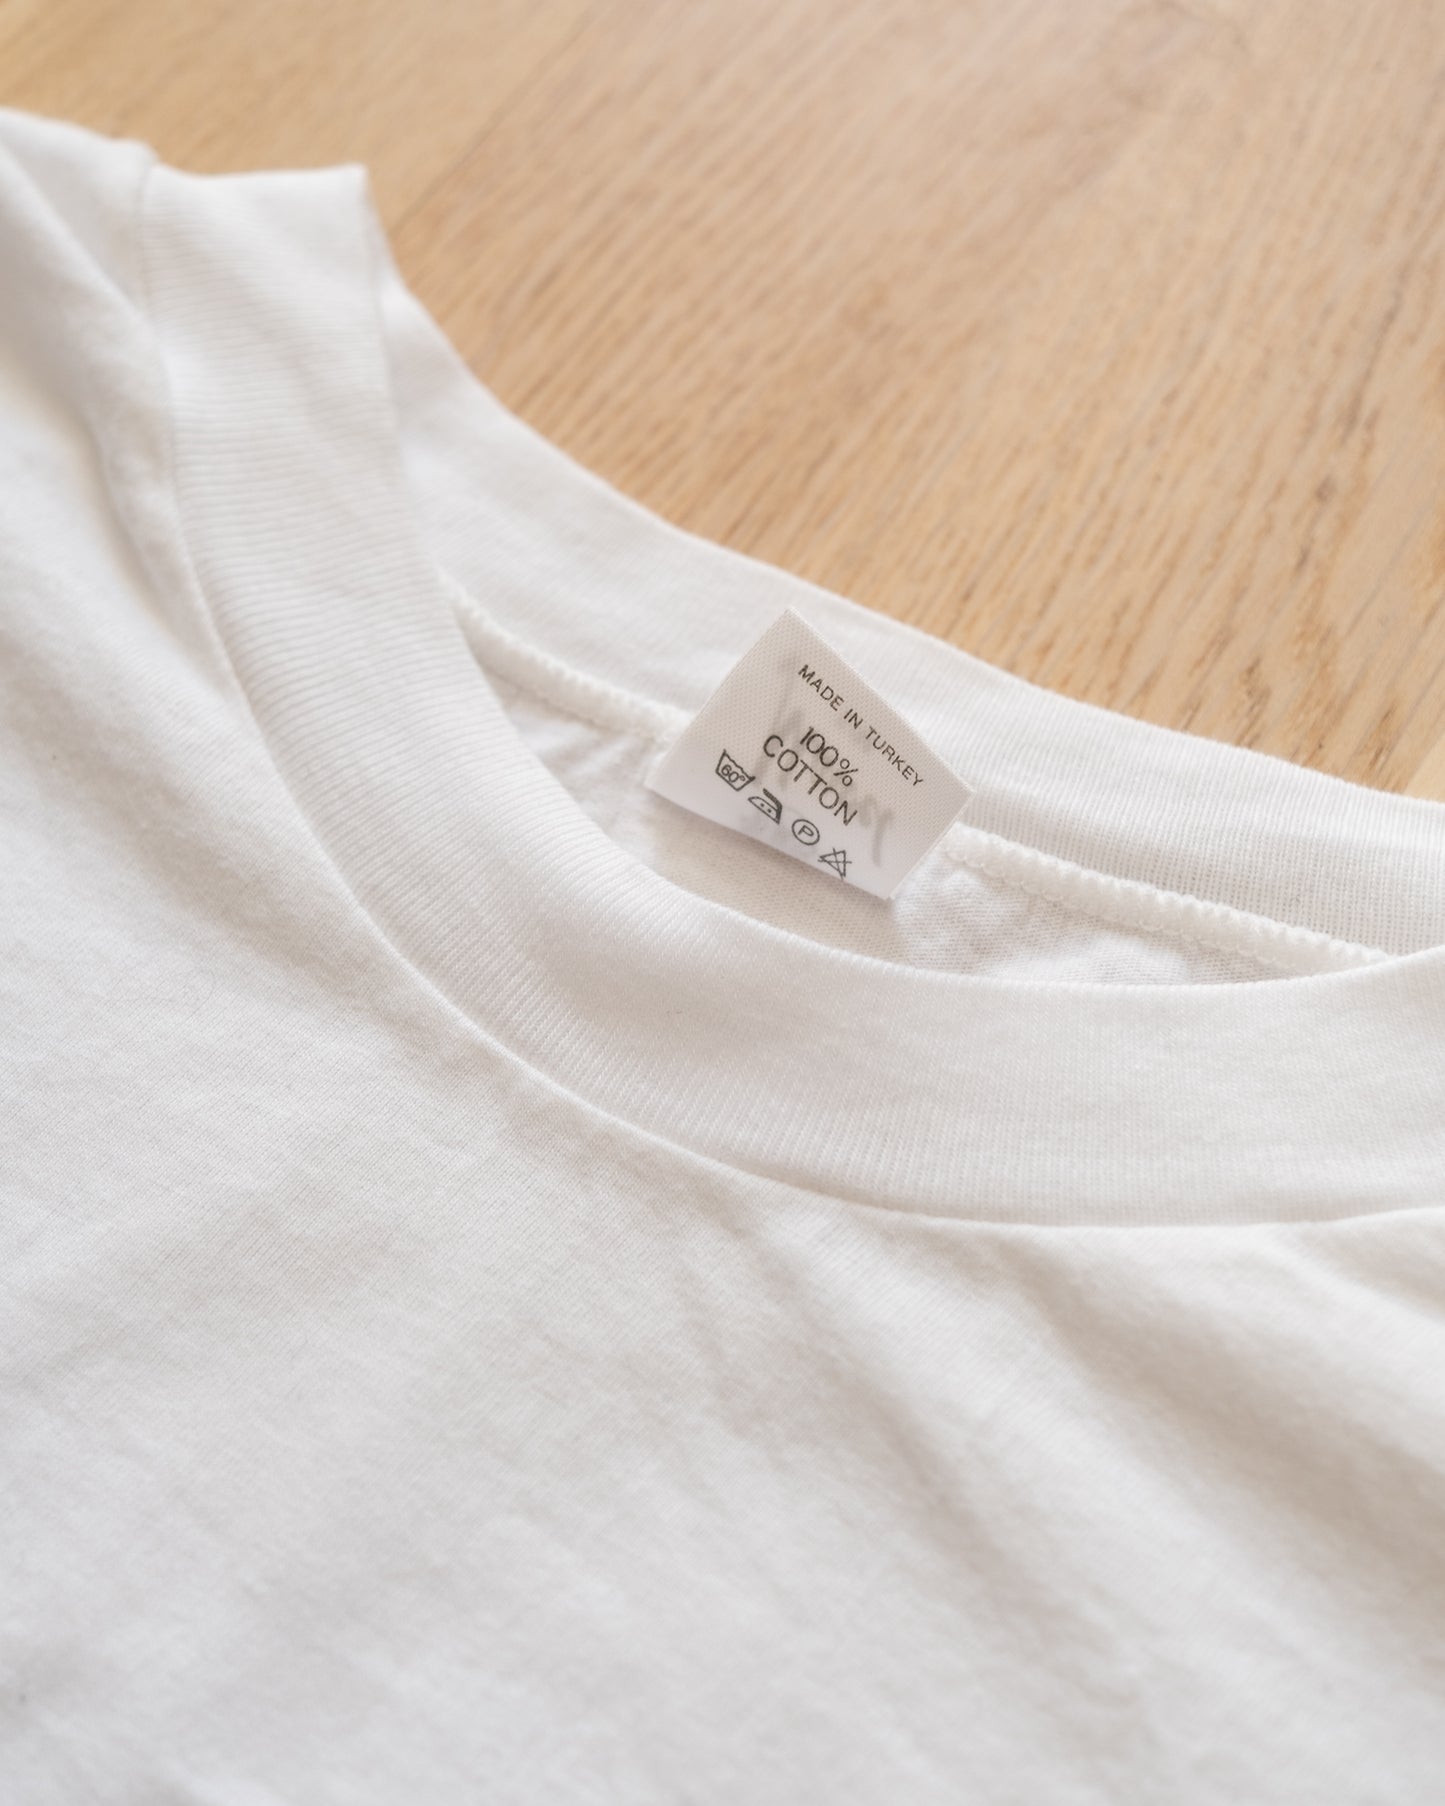 'Ge Liv, Ge Blöd' Region Stockholm T-Shirt Size M